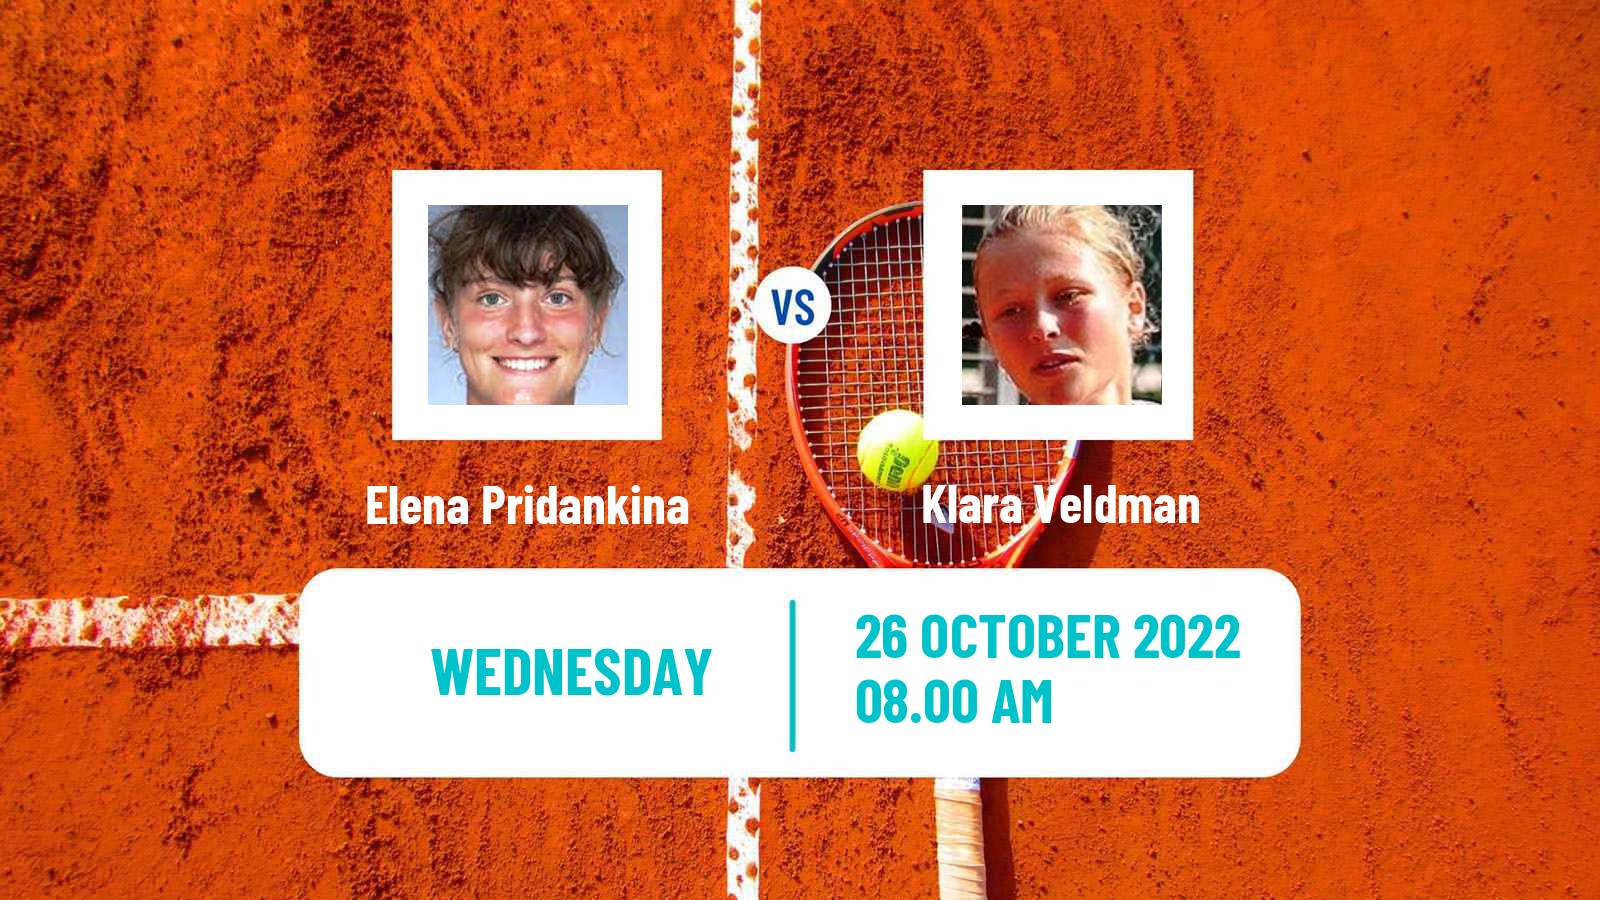 Tennis ITF Tournaments Elena Pridankina - Klara Veldman